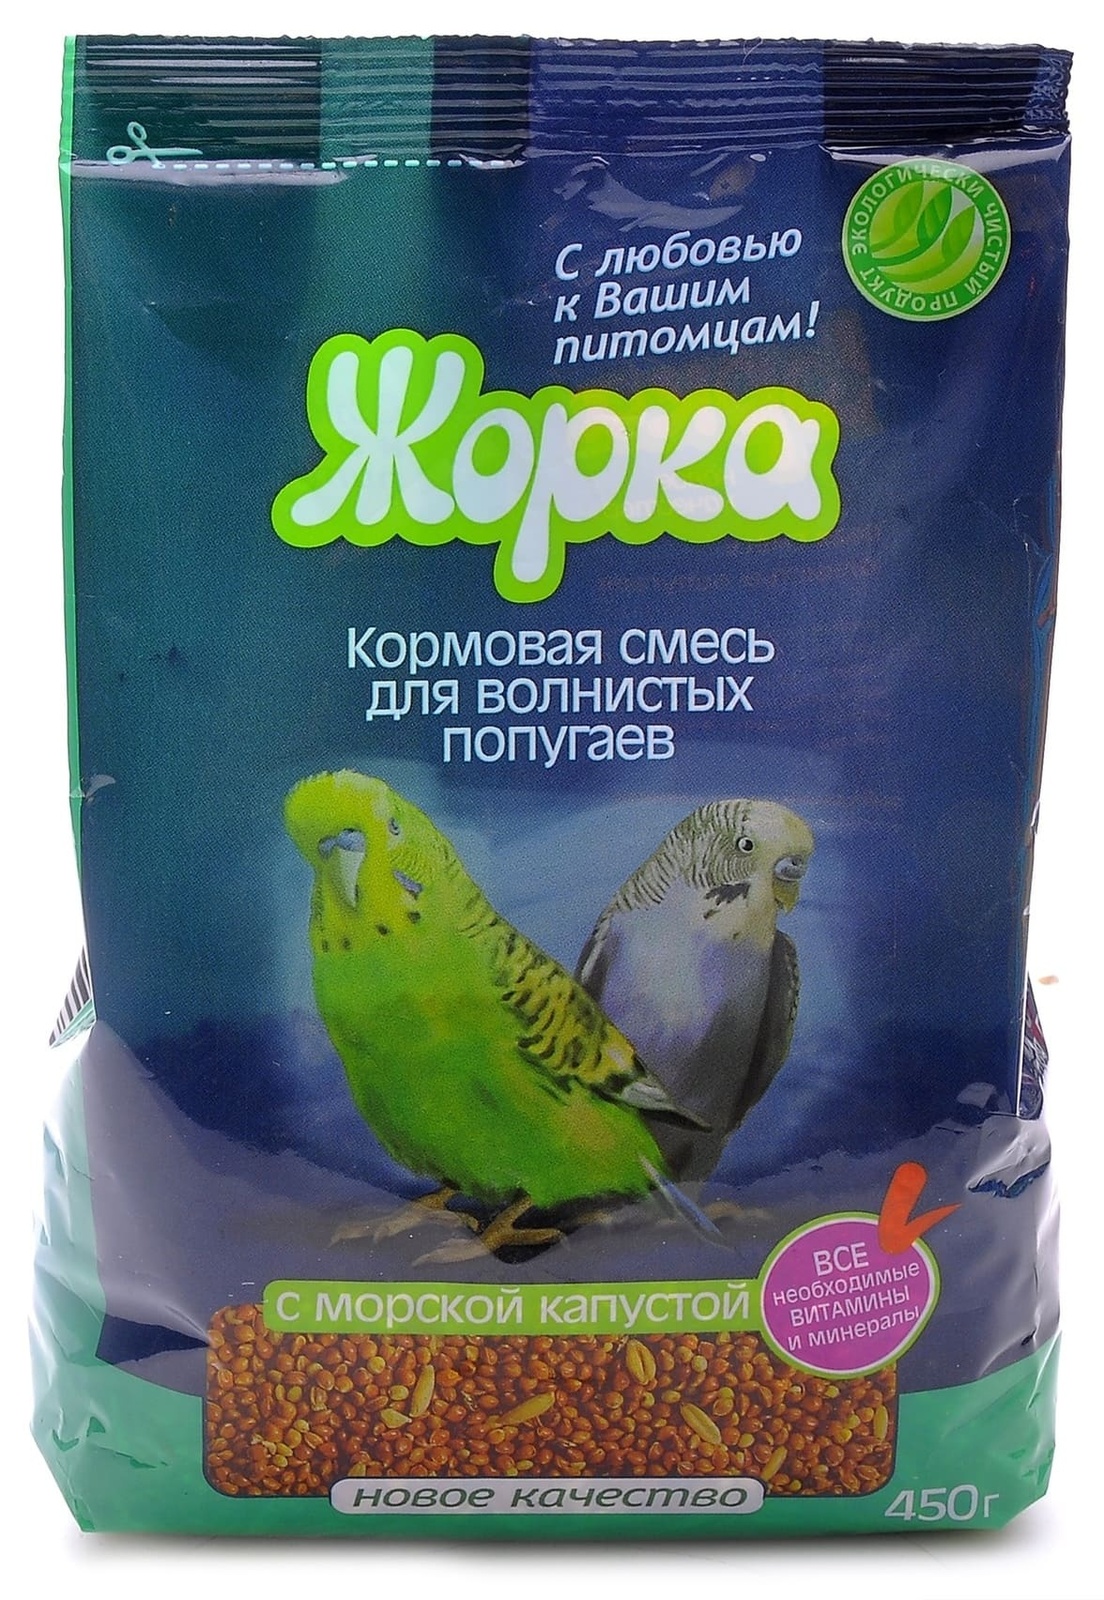 Жорка Жорка lux для волнистых попугаев с Морской капустой (пакет) (450 г)